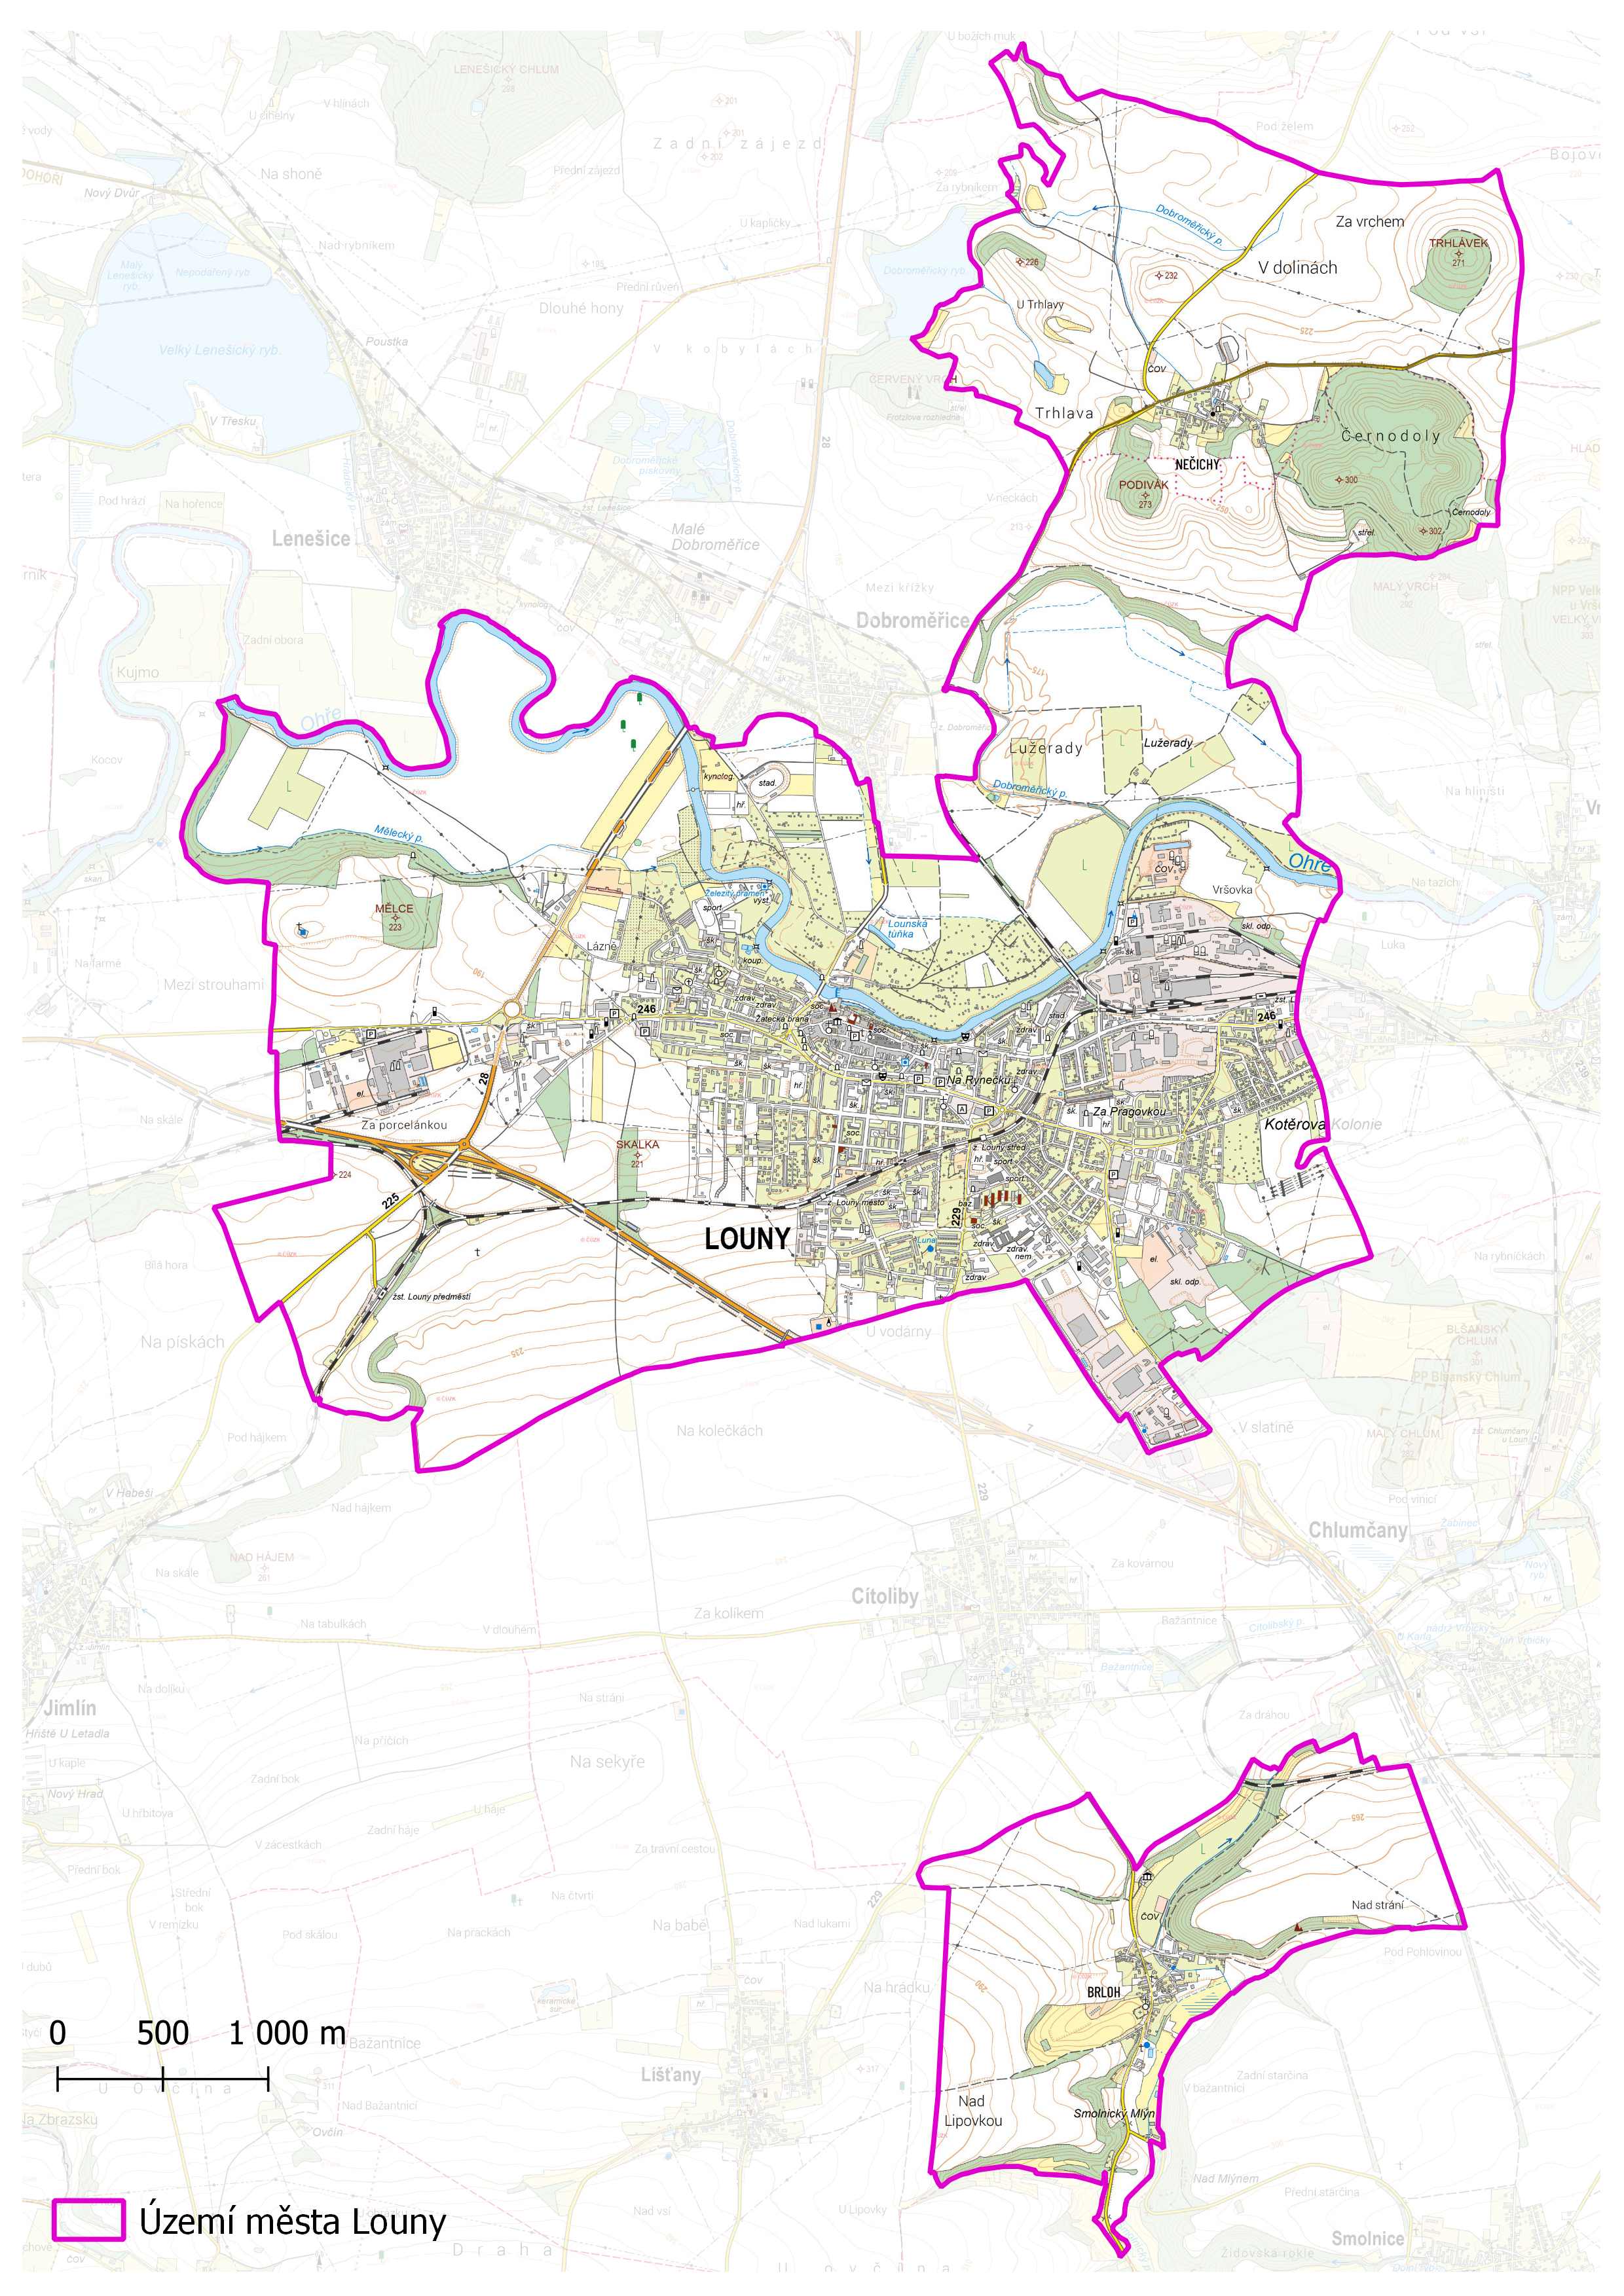 Katastrální území města Louny